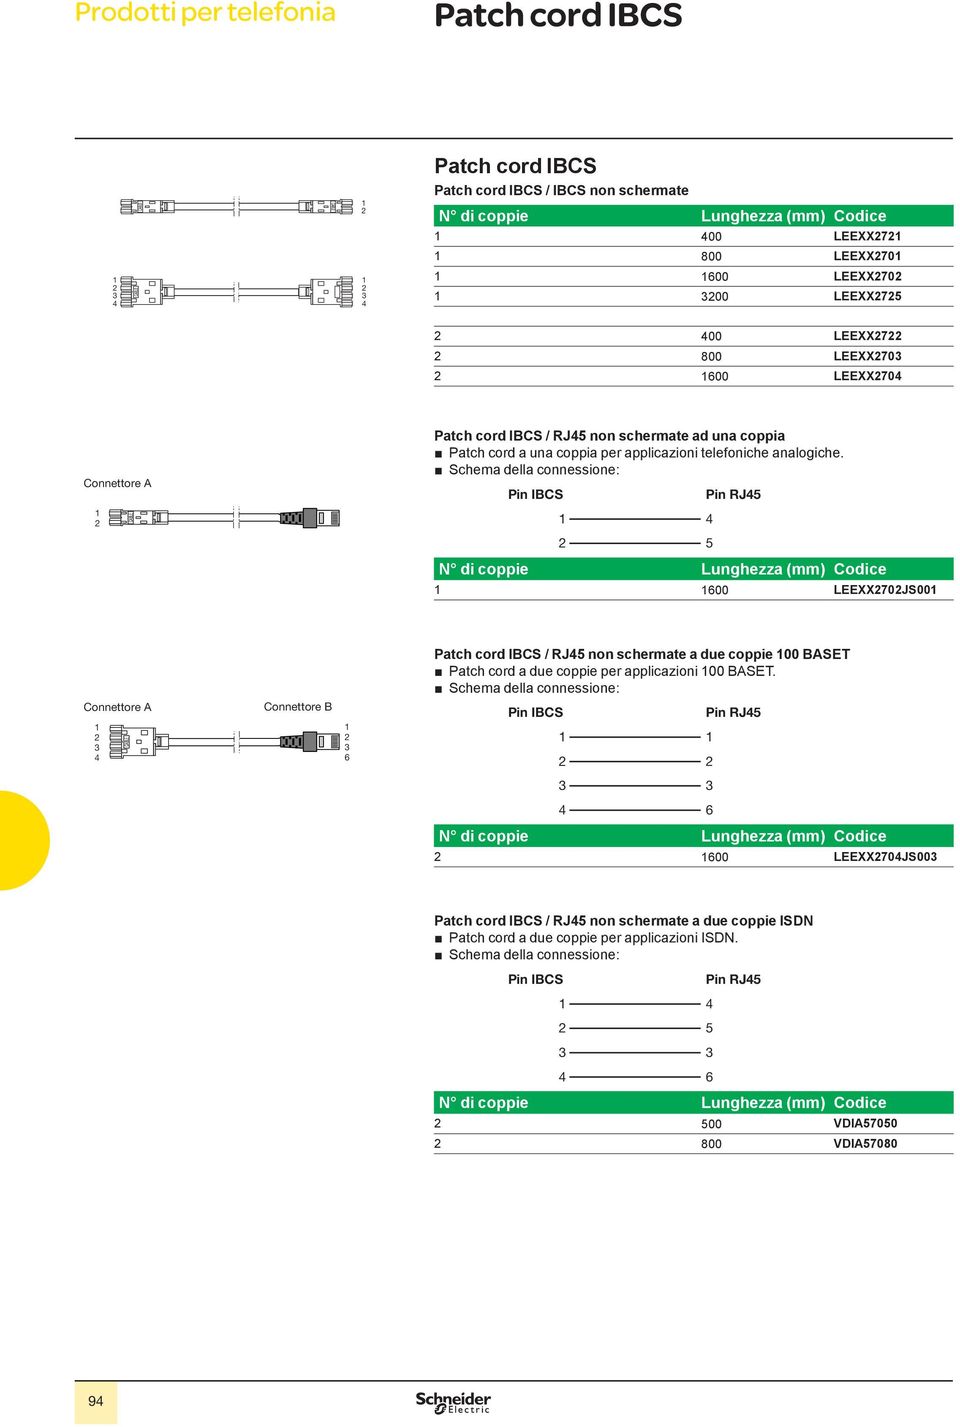 Schema della connessione: Pin IBCS Pin RJ5 5 600 LEEXX70JS00 Patch cord IBCS / RJ5 non schermate a due coppie 00 BASET Patch cord a due coppie per applicazioni 00 BASET.